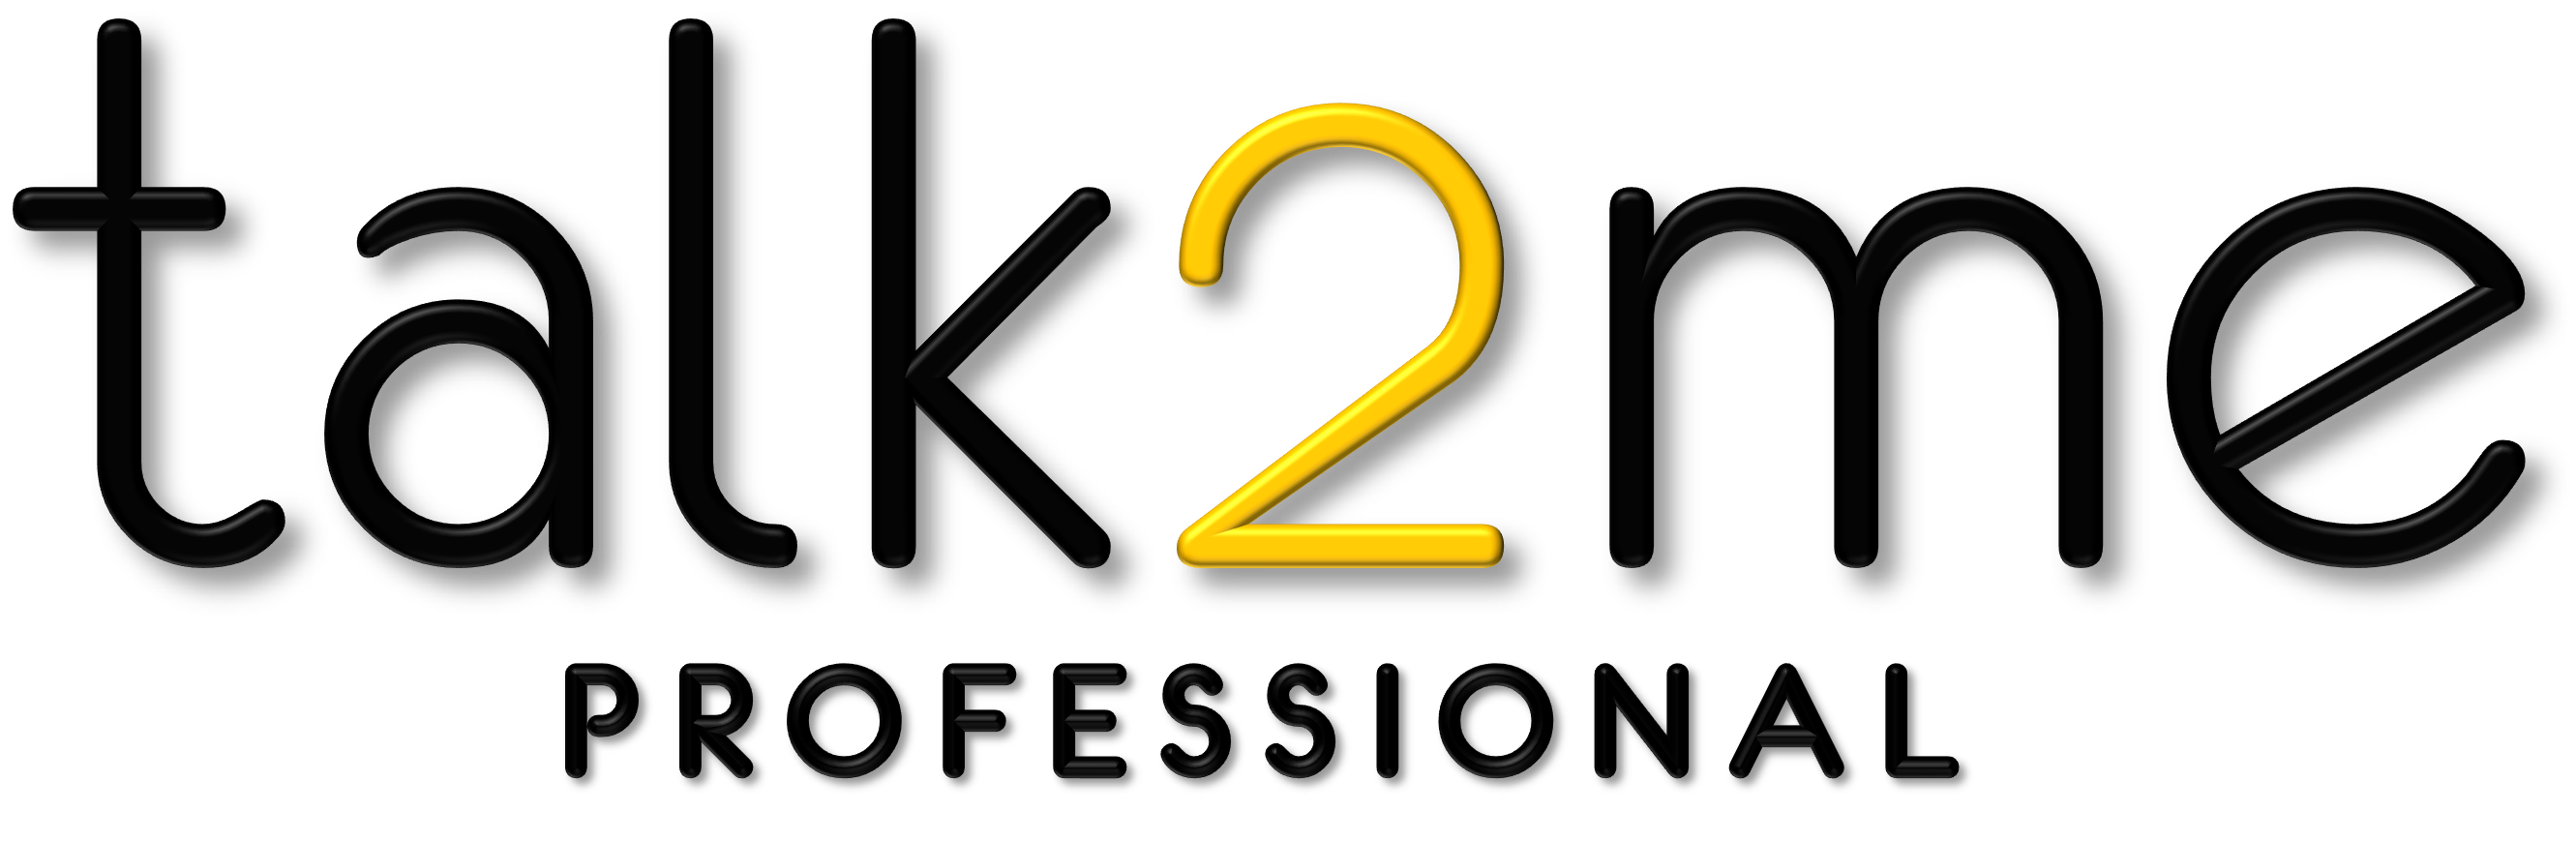 talk2me pro logo balck